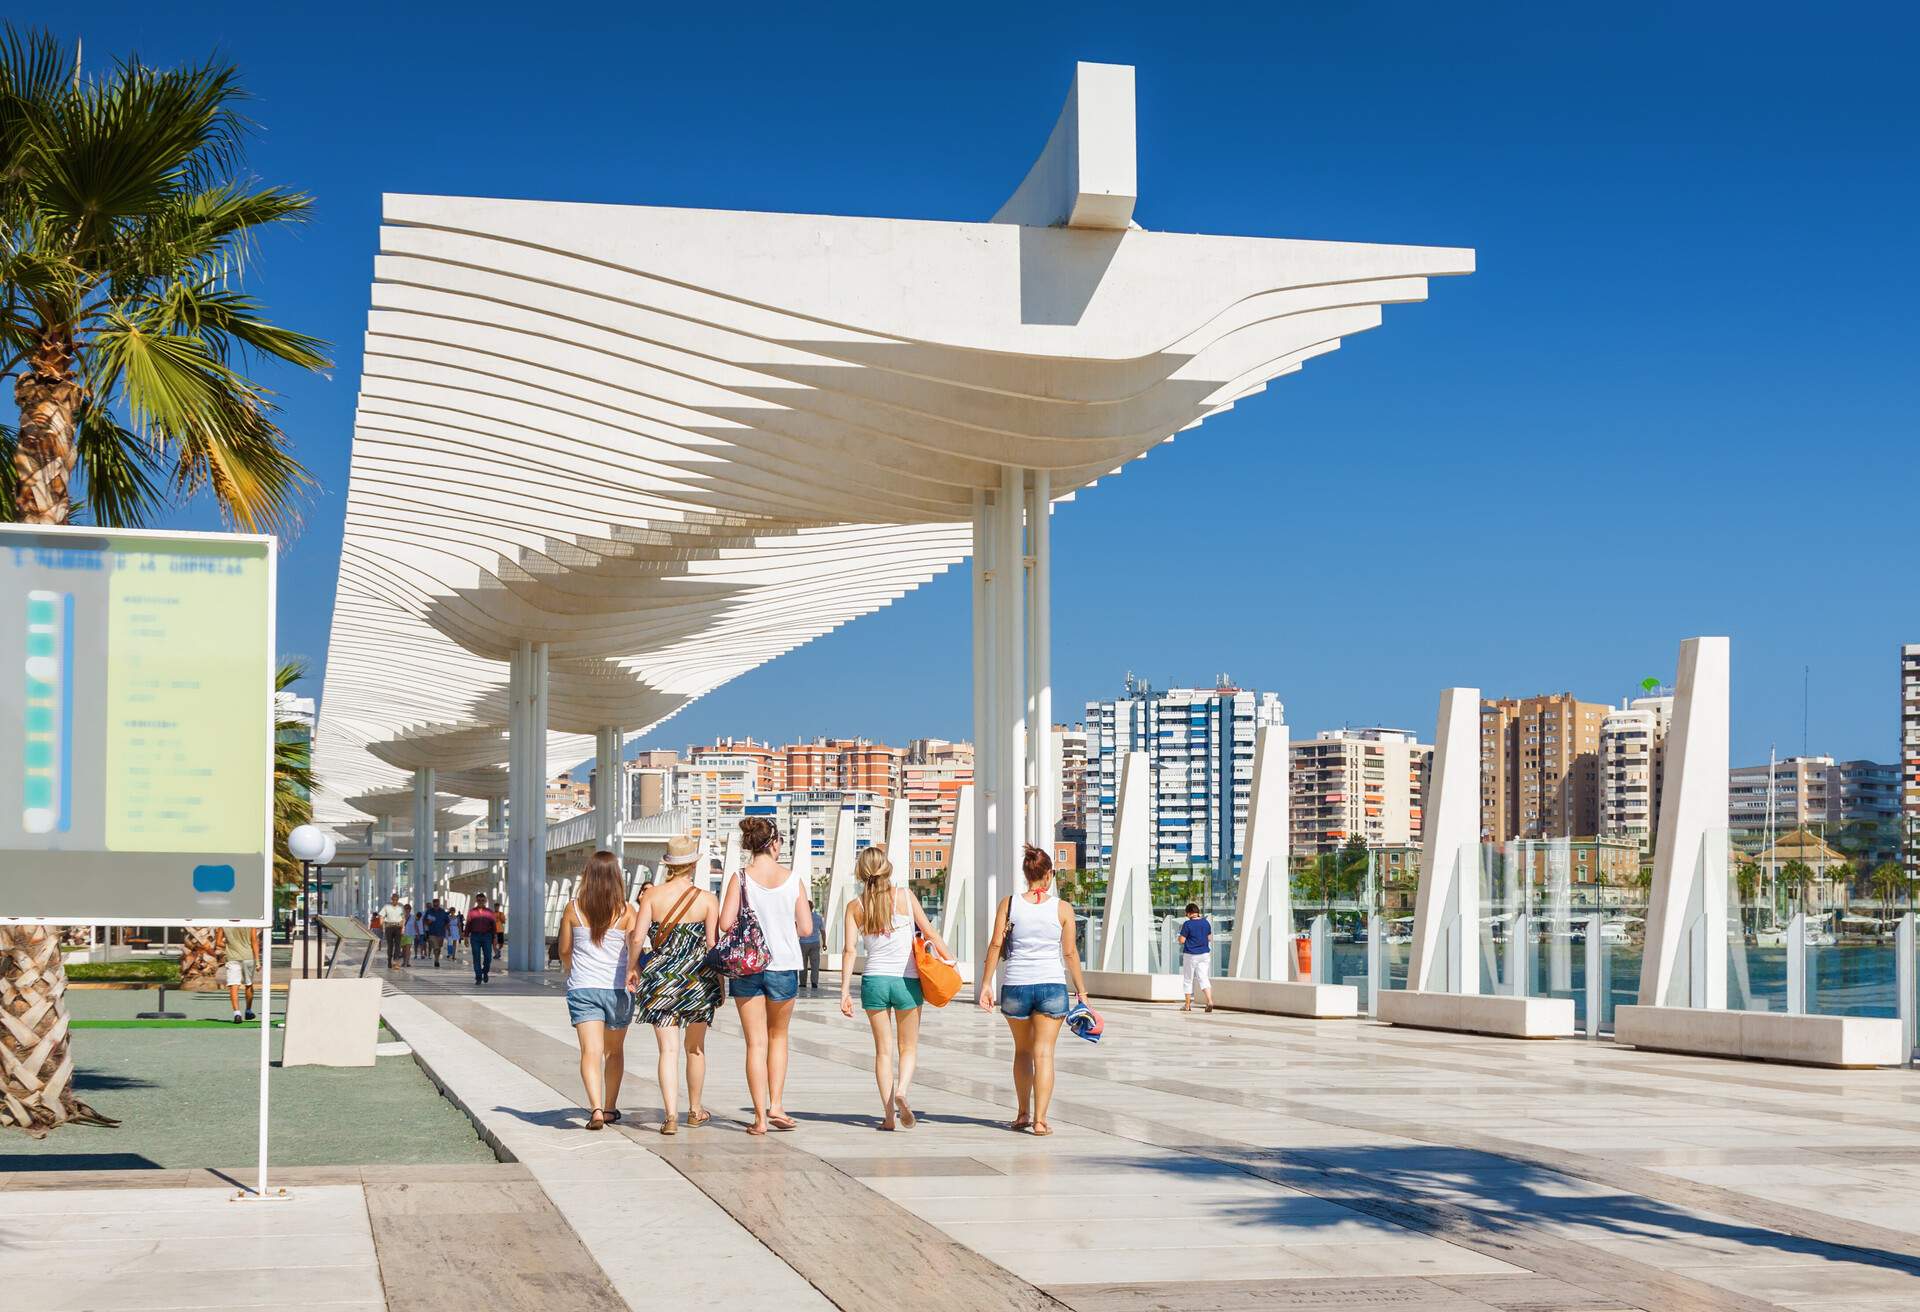 DEST_SPAIN_MALAGA_Sunny view of promenade near port of Malaga_shutterstock-premier_418720591